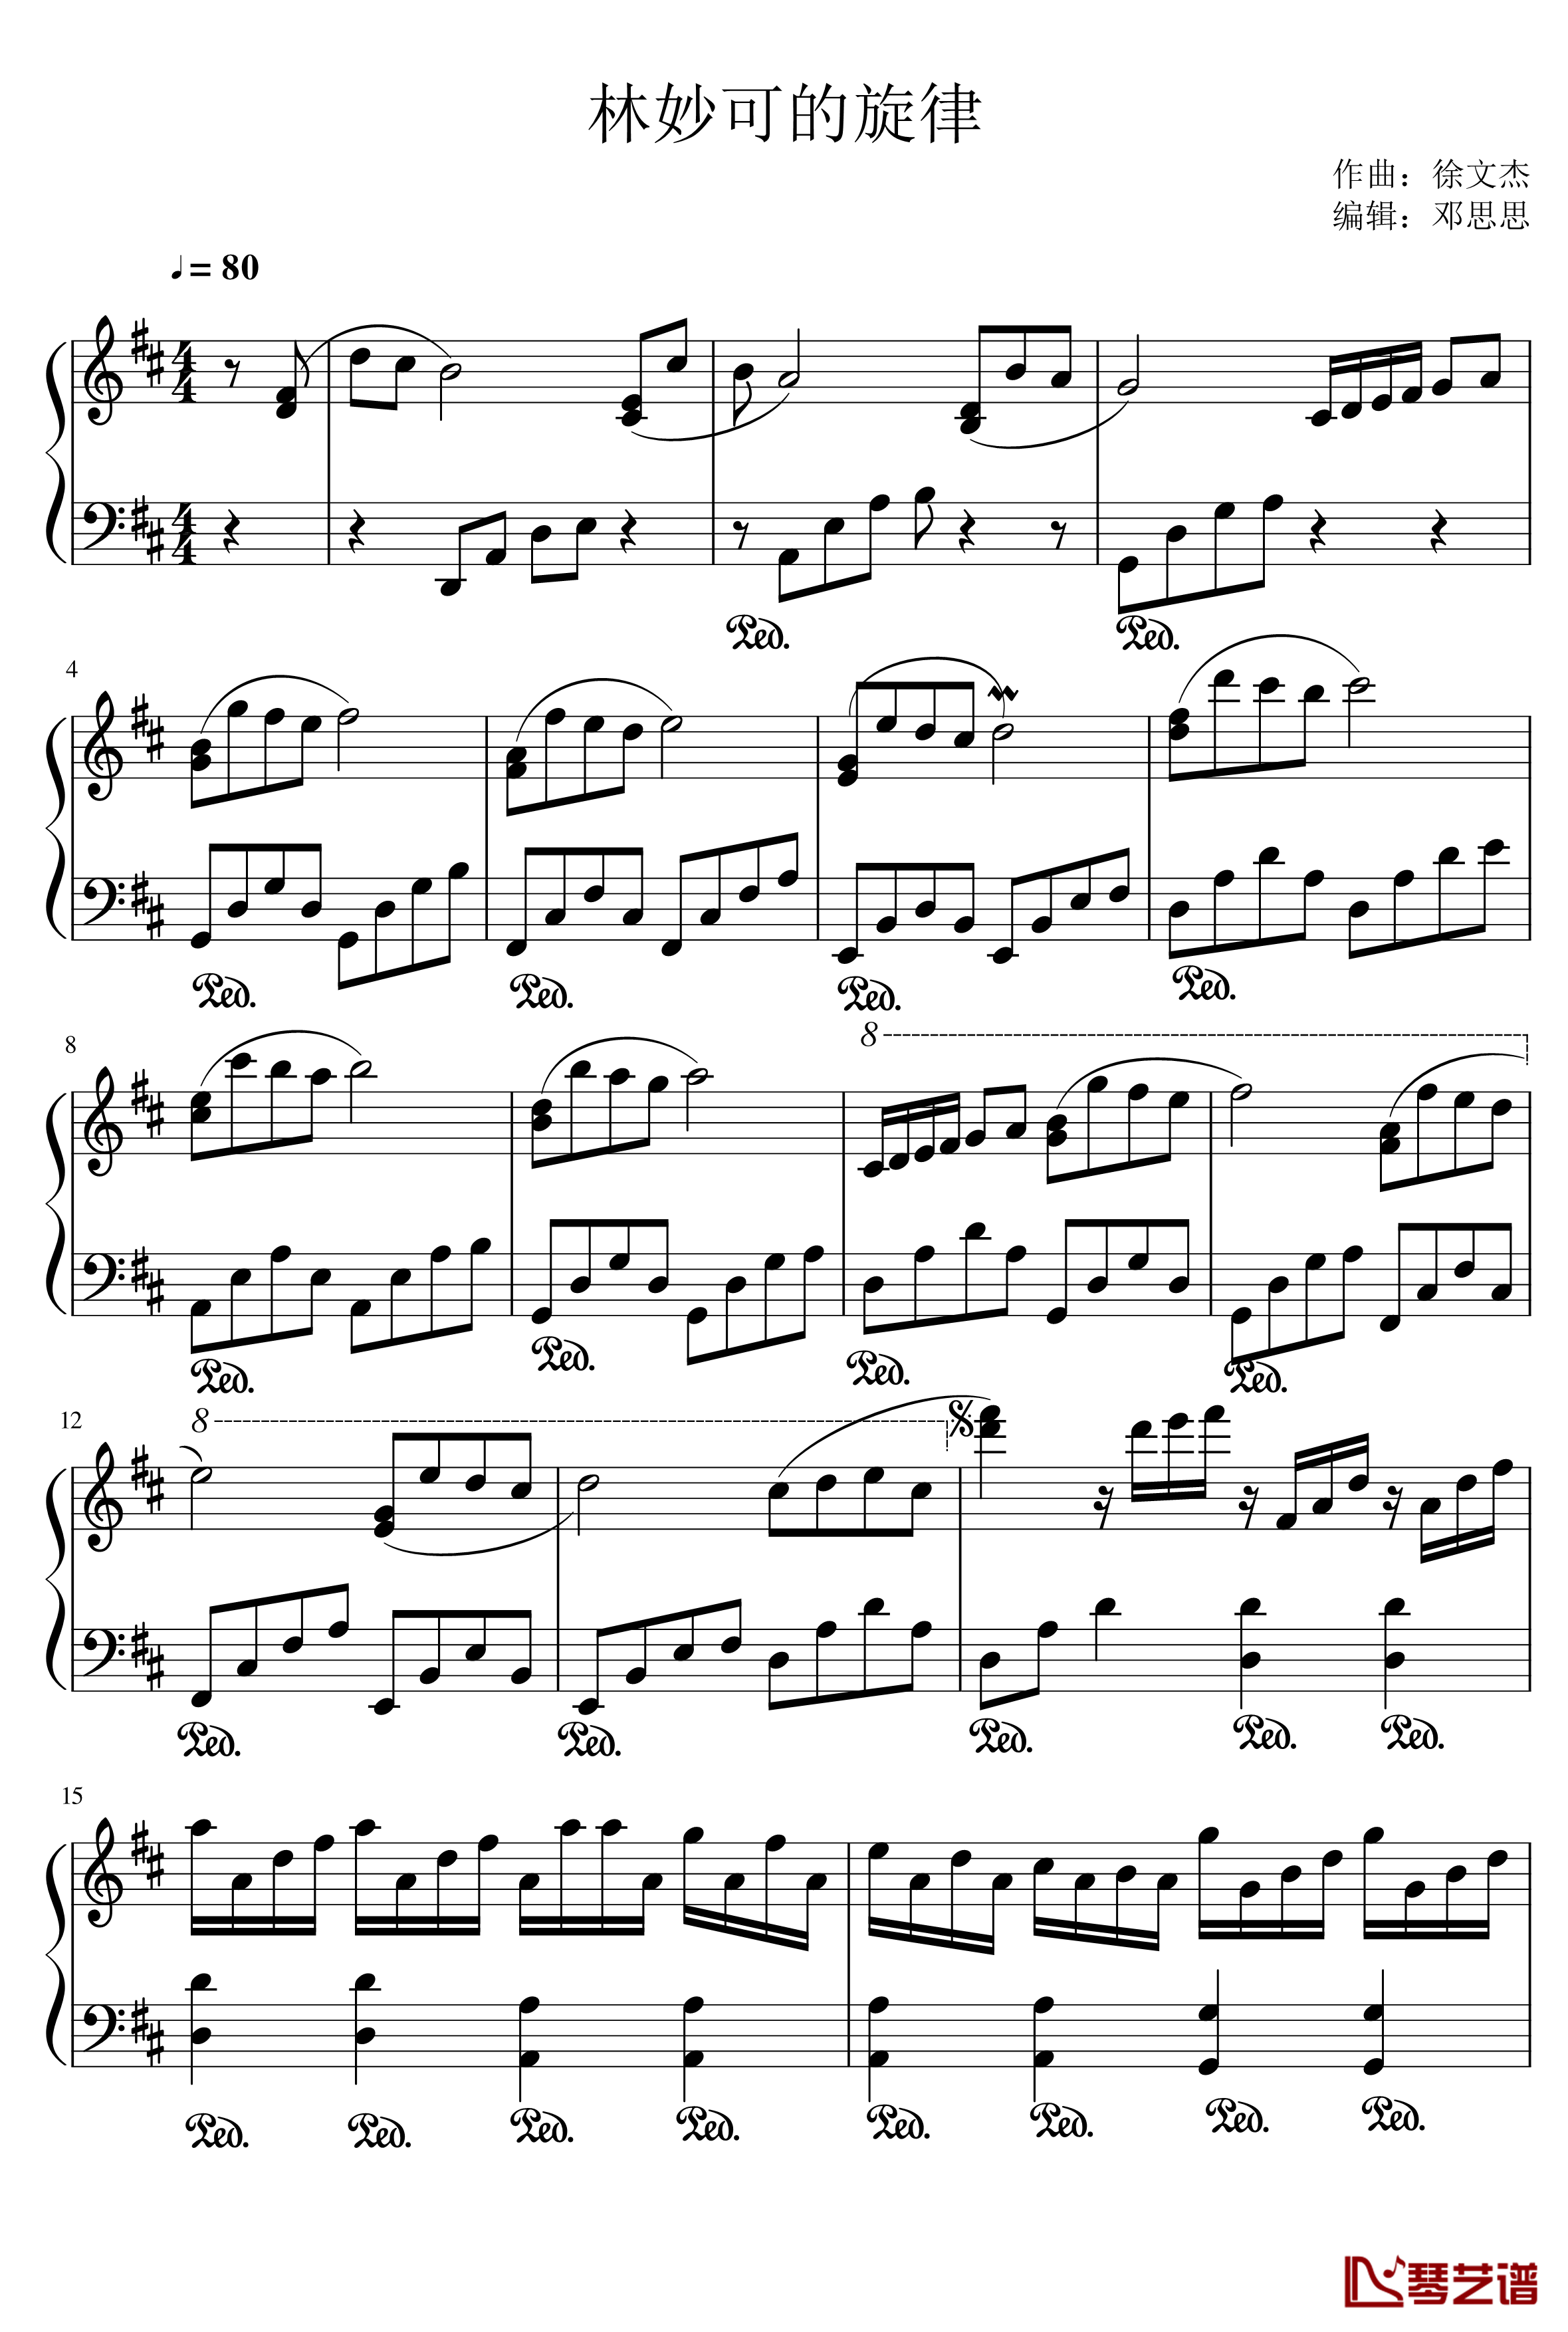 林妙可的旋律钢琴谱-156516370861